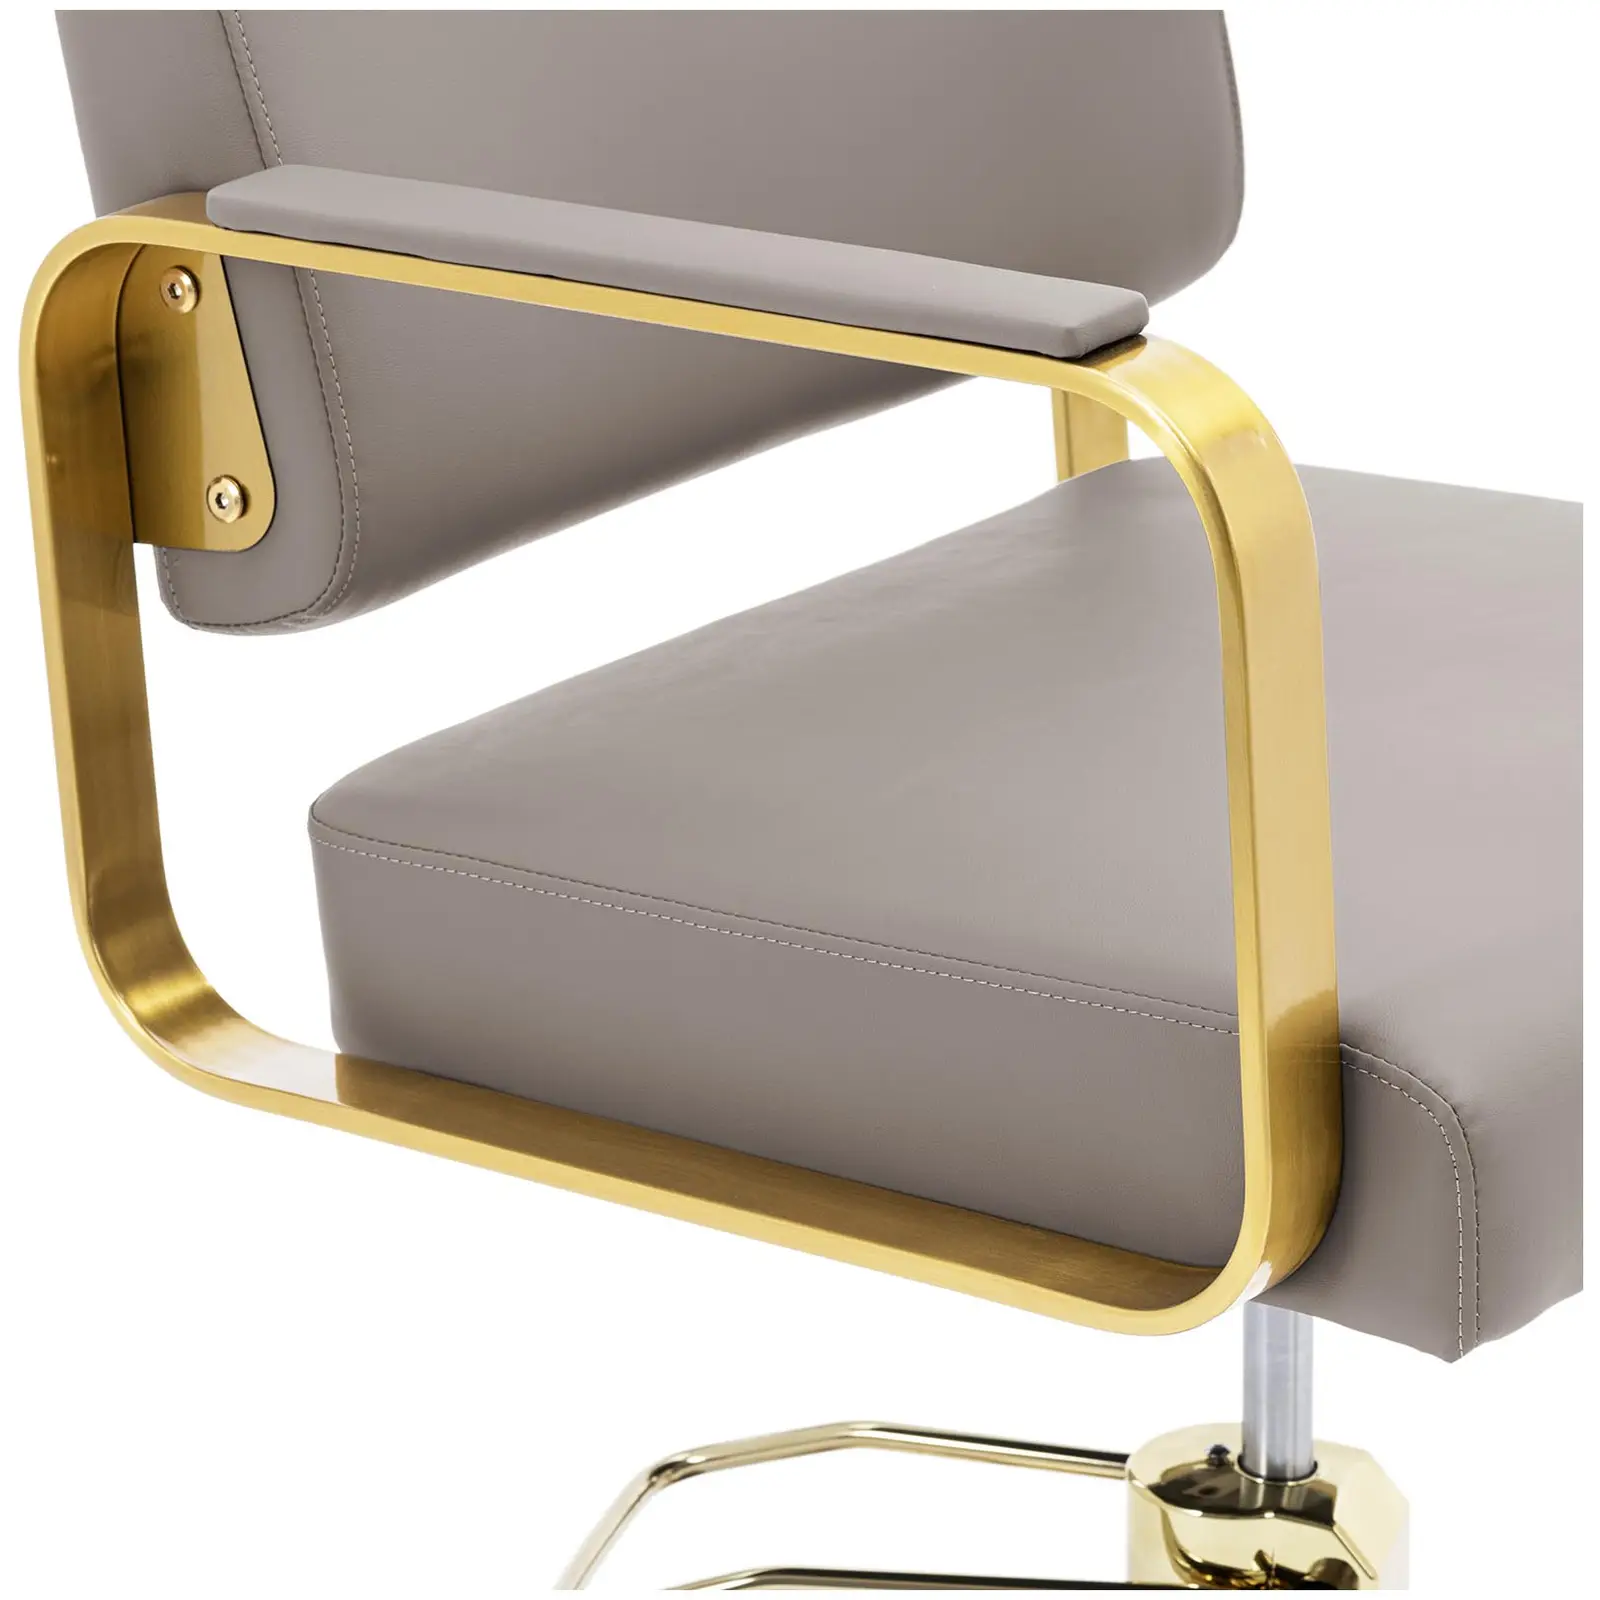 Kappersstoel met voetsteun - 900 - 1050 mm - 200 kg - beige/goud